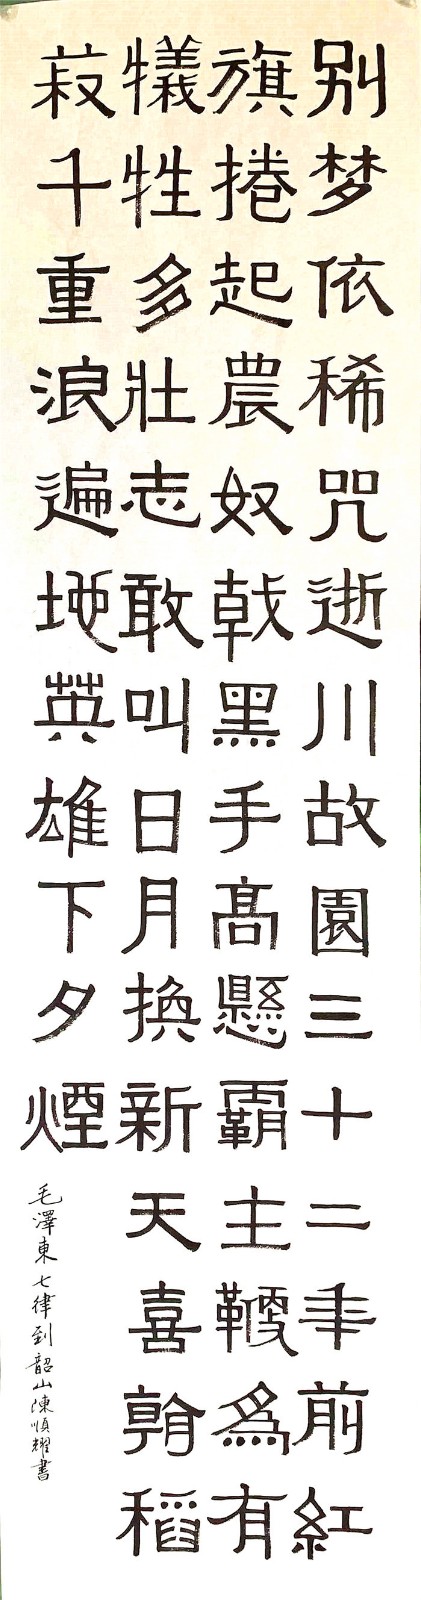 陈顺耀著名书画家 喜迎新中国成立70周年华诞—2019陈顺耀的中国书法、绘画作品展示